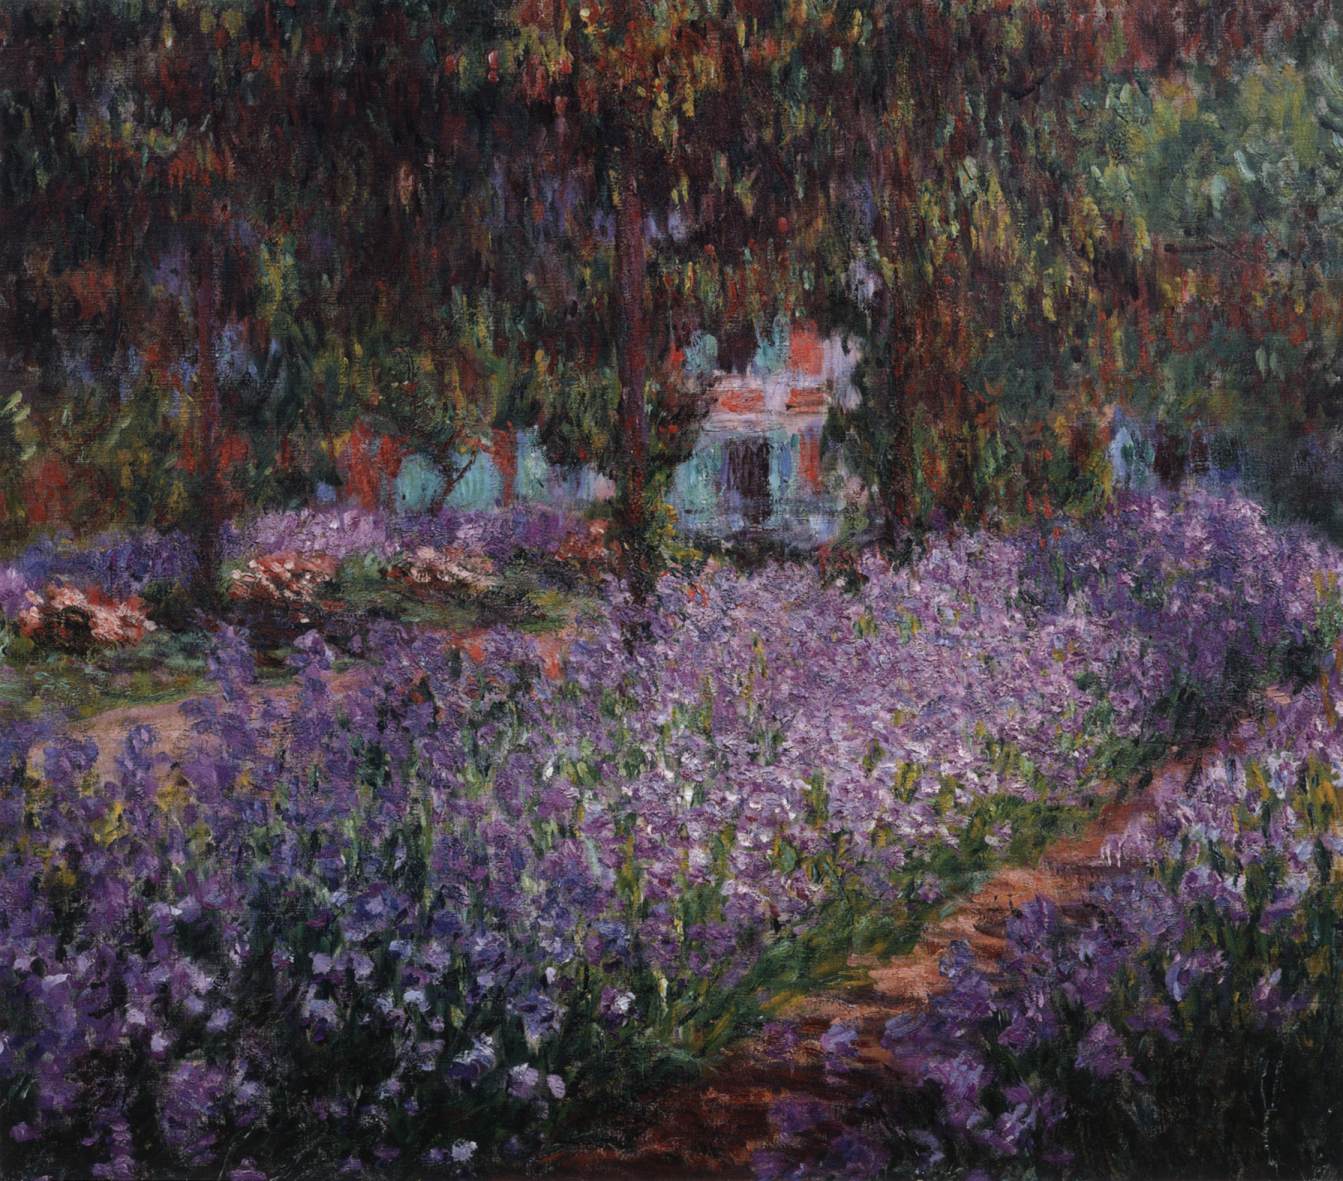 Iris in the Monet Garden in Giverny